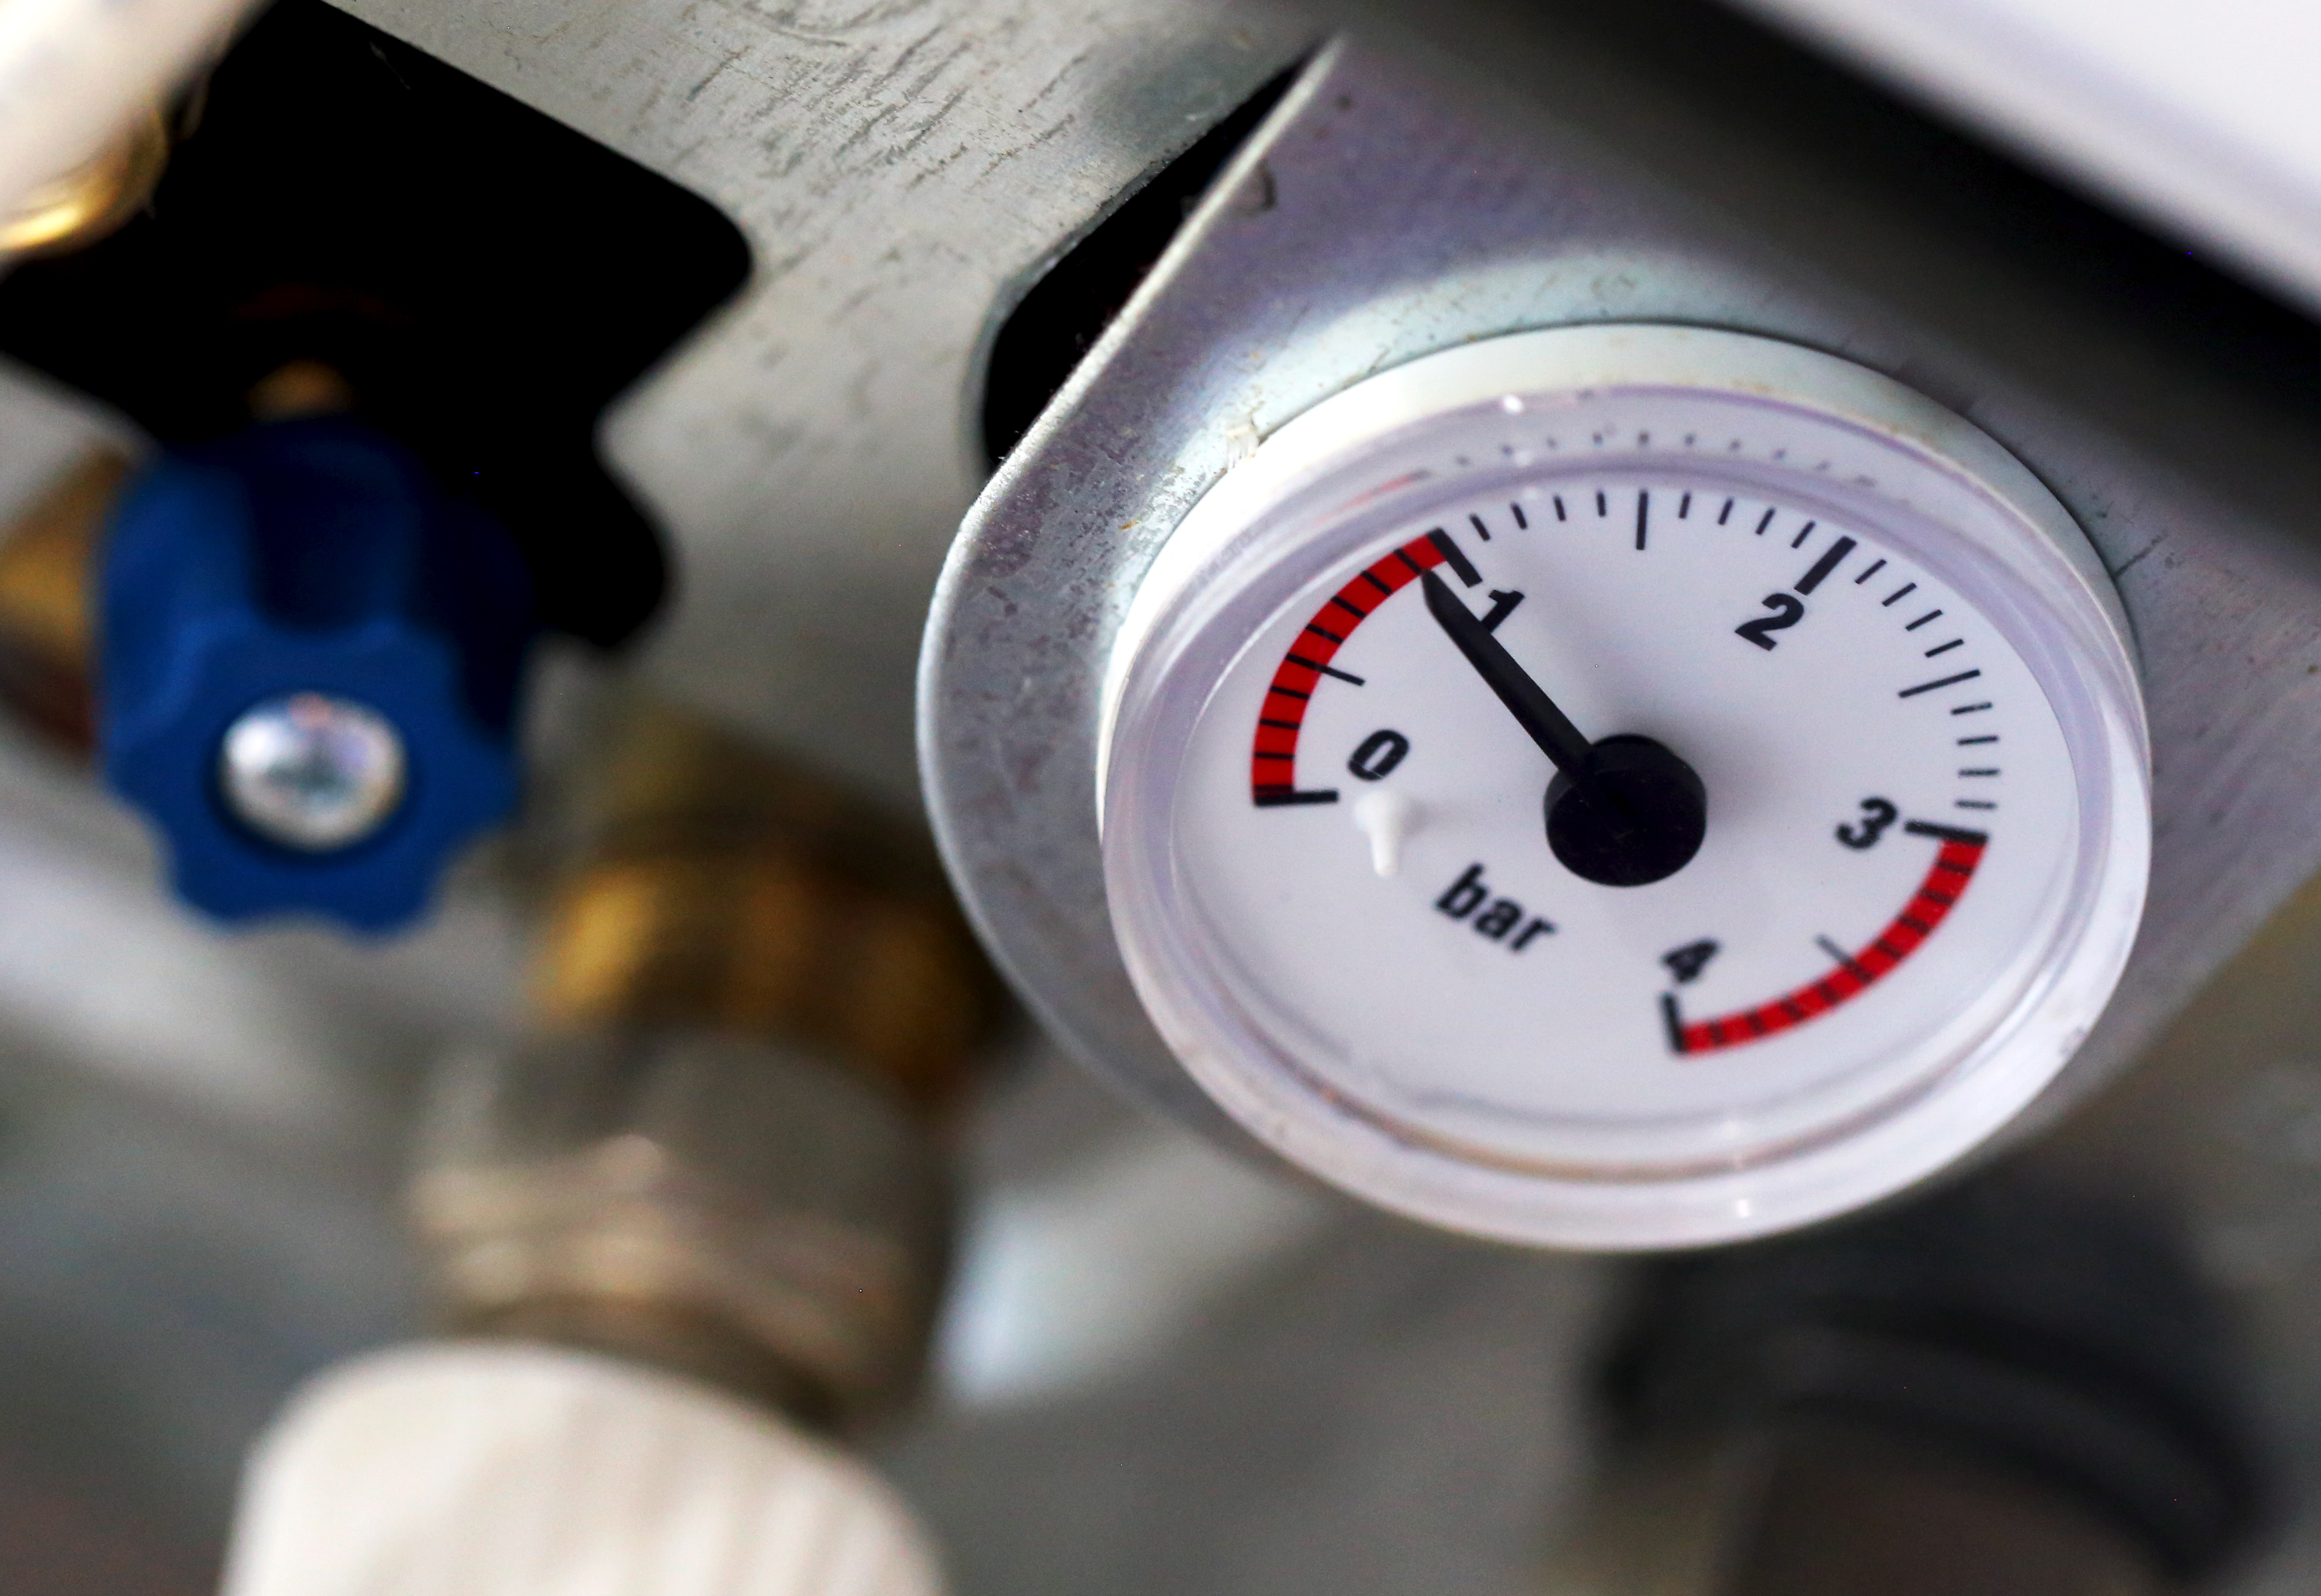 ¿Sabes cuál es la presión que debe tener la caldera de gas natural de tu casa? En Anidia te contamos todos los detalles sobre la presión de gas natural.